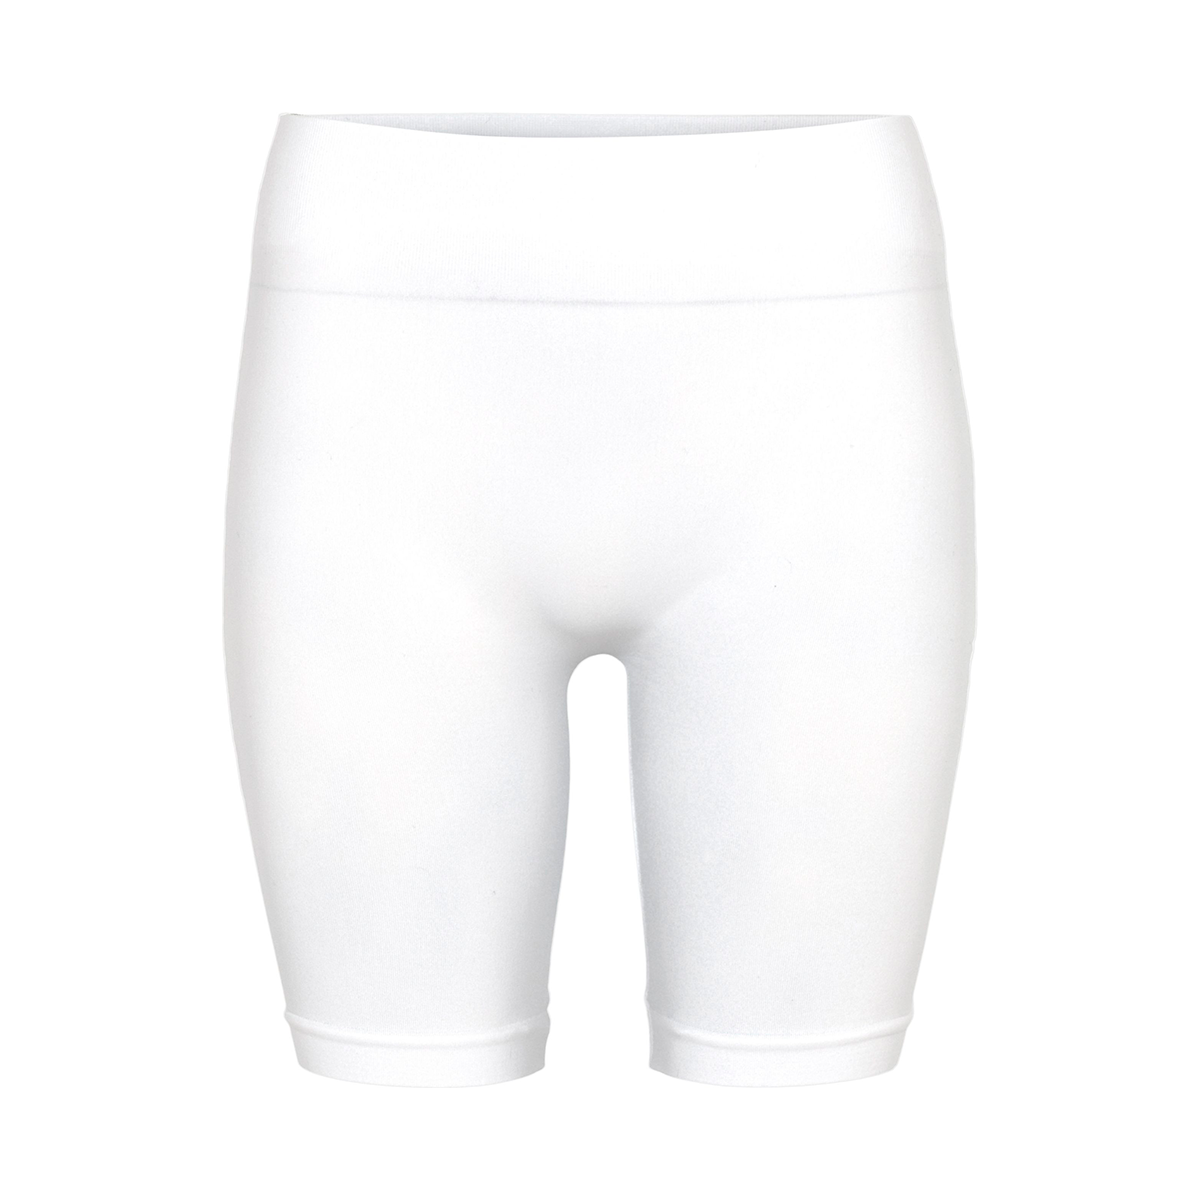 Billede af Decoy Seamless Shorts, Farve: Hvid, Størrelse: S/M, Dame